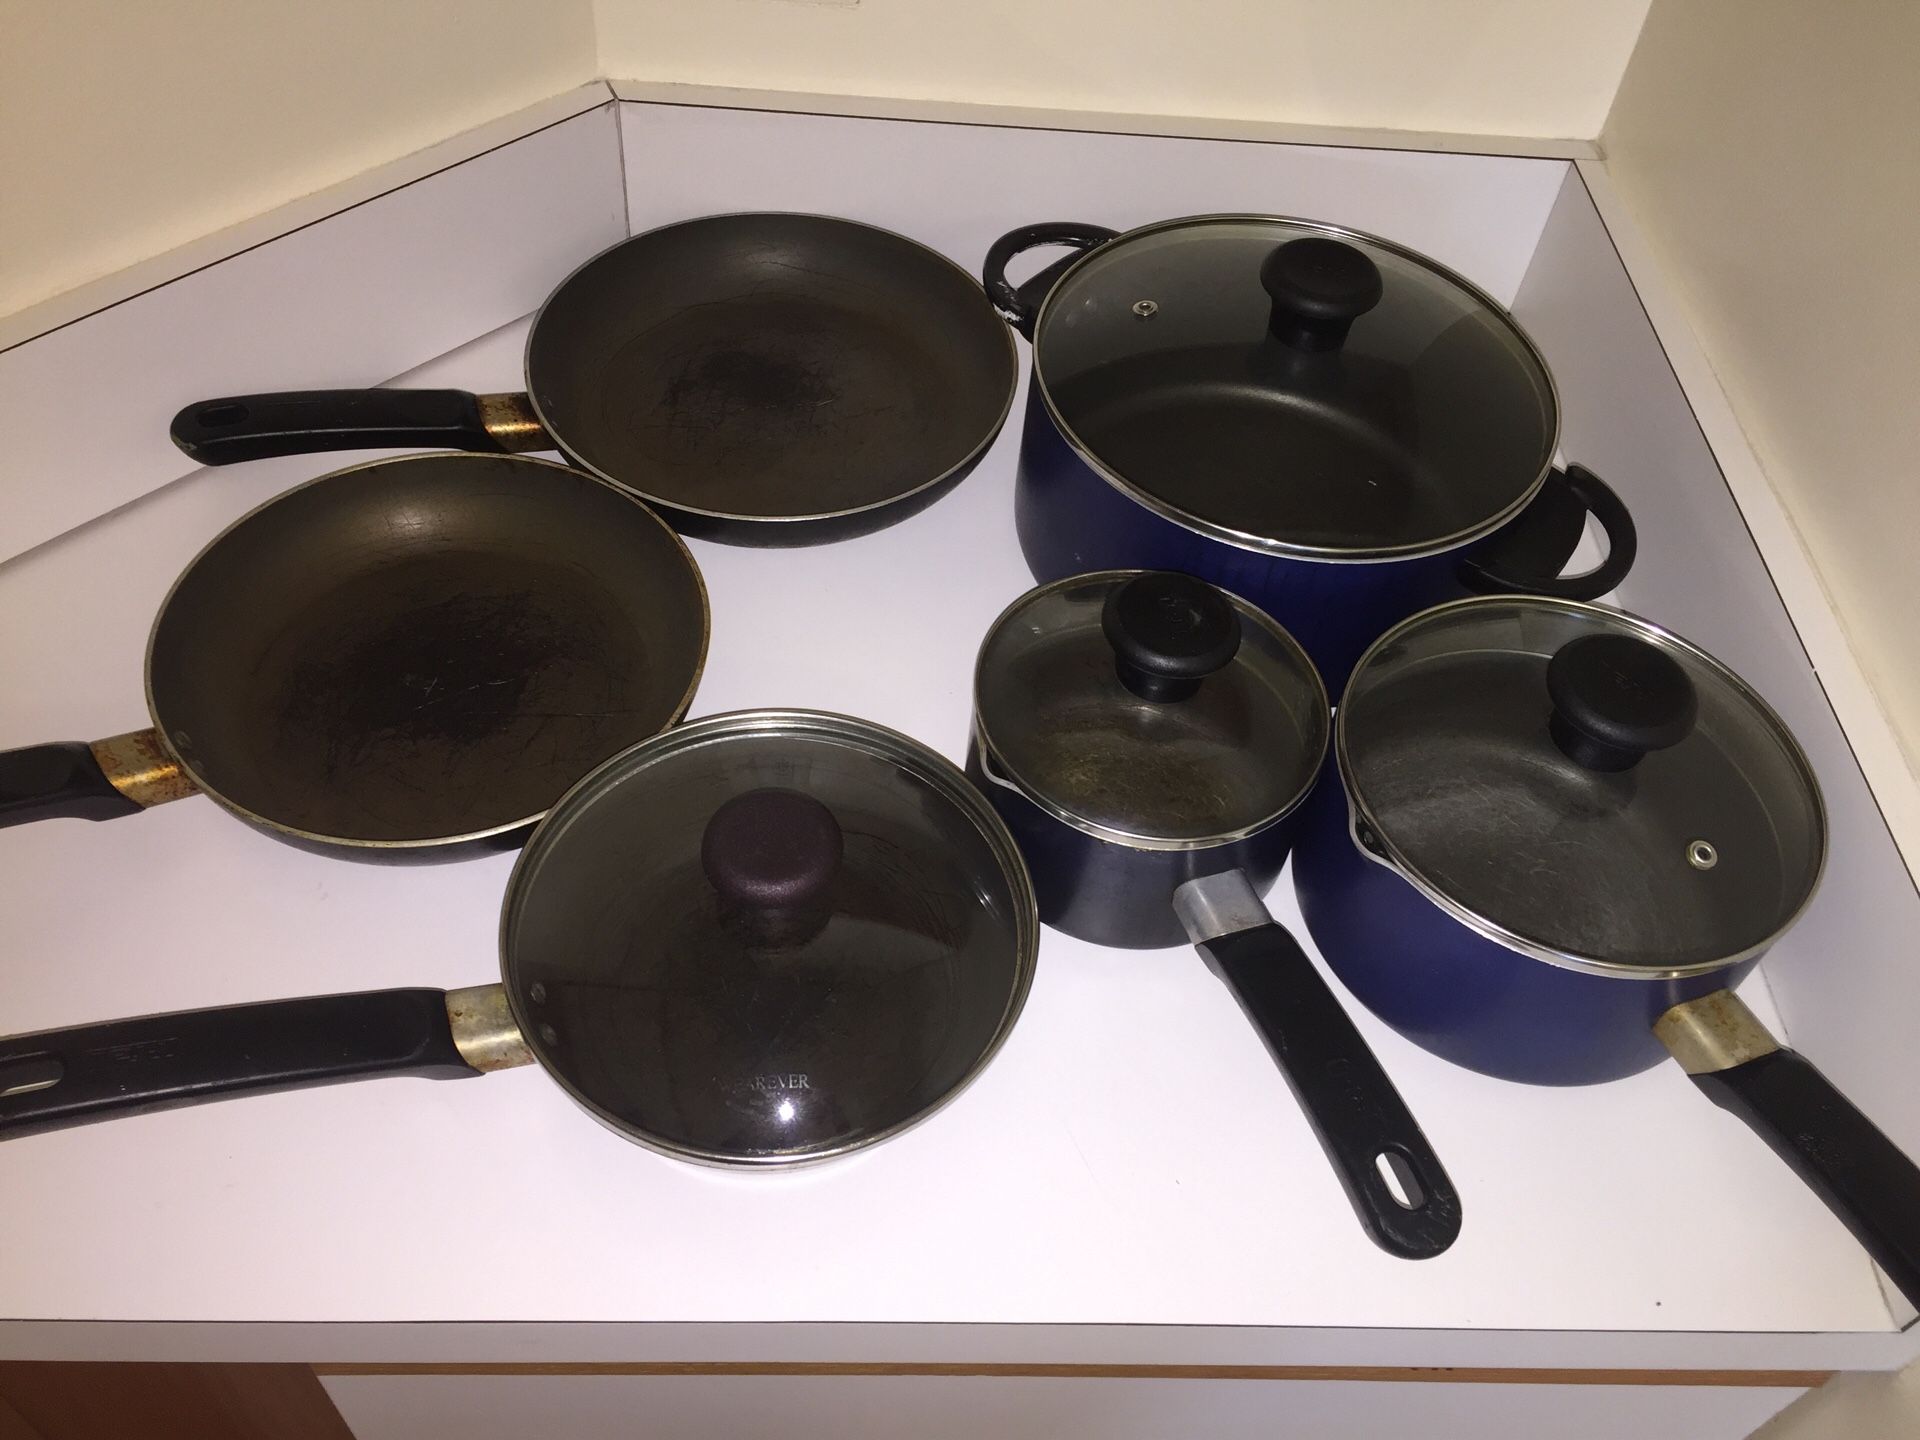 T-fal 10-piece pots and pans set